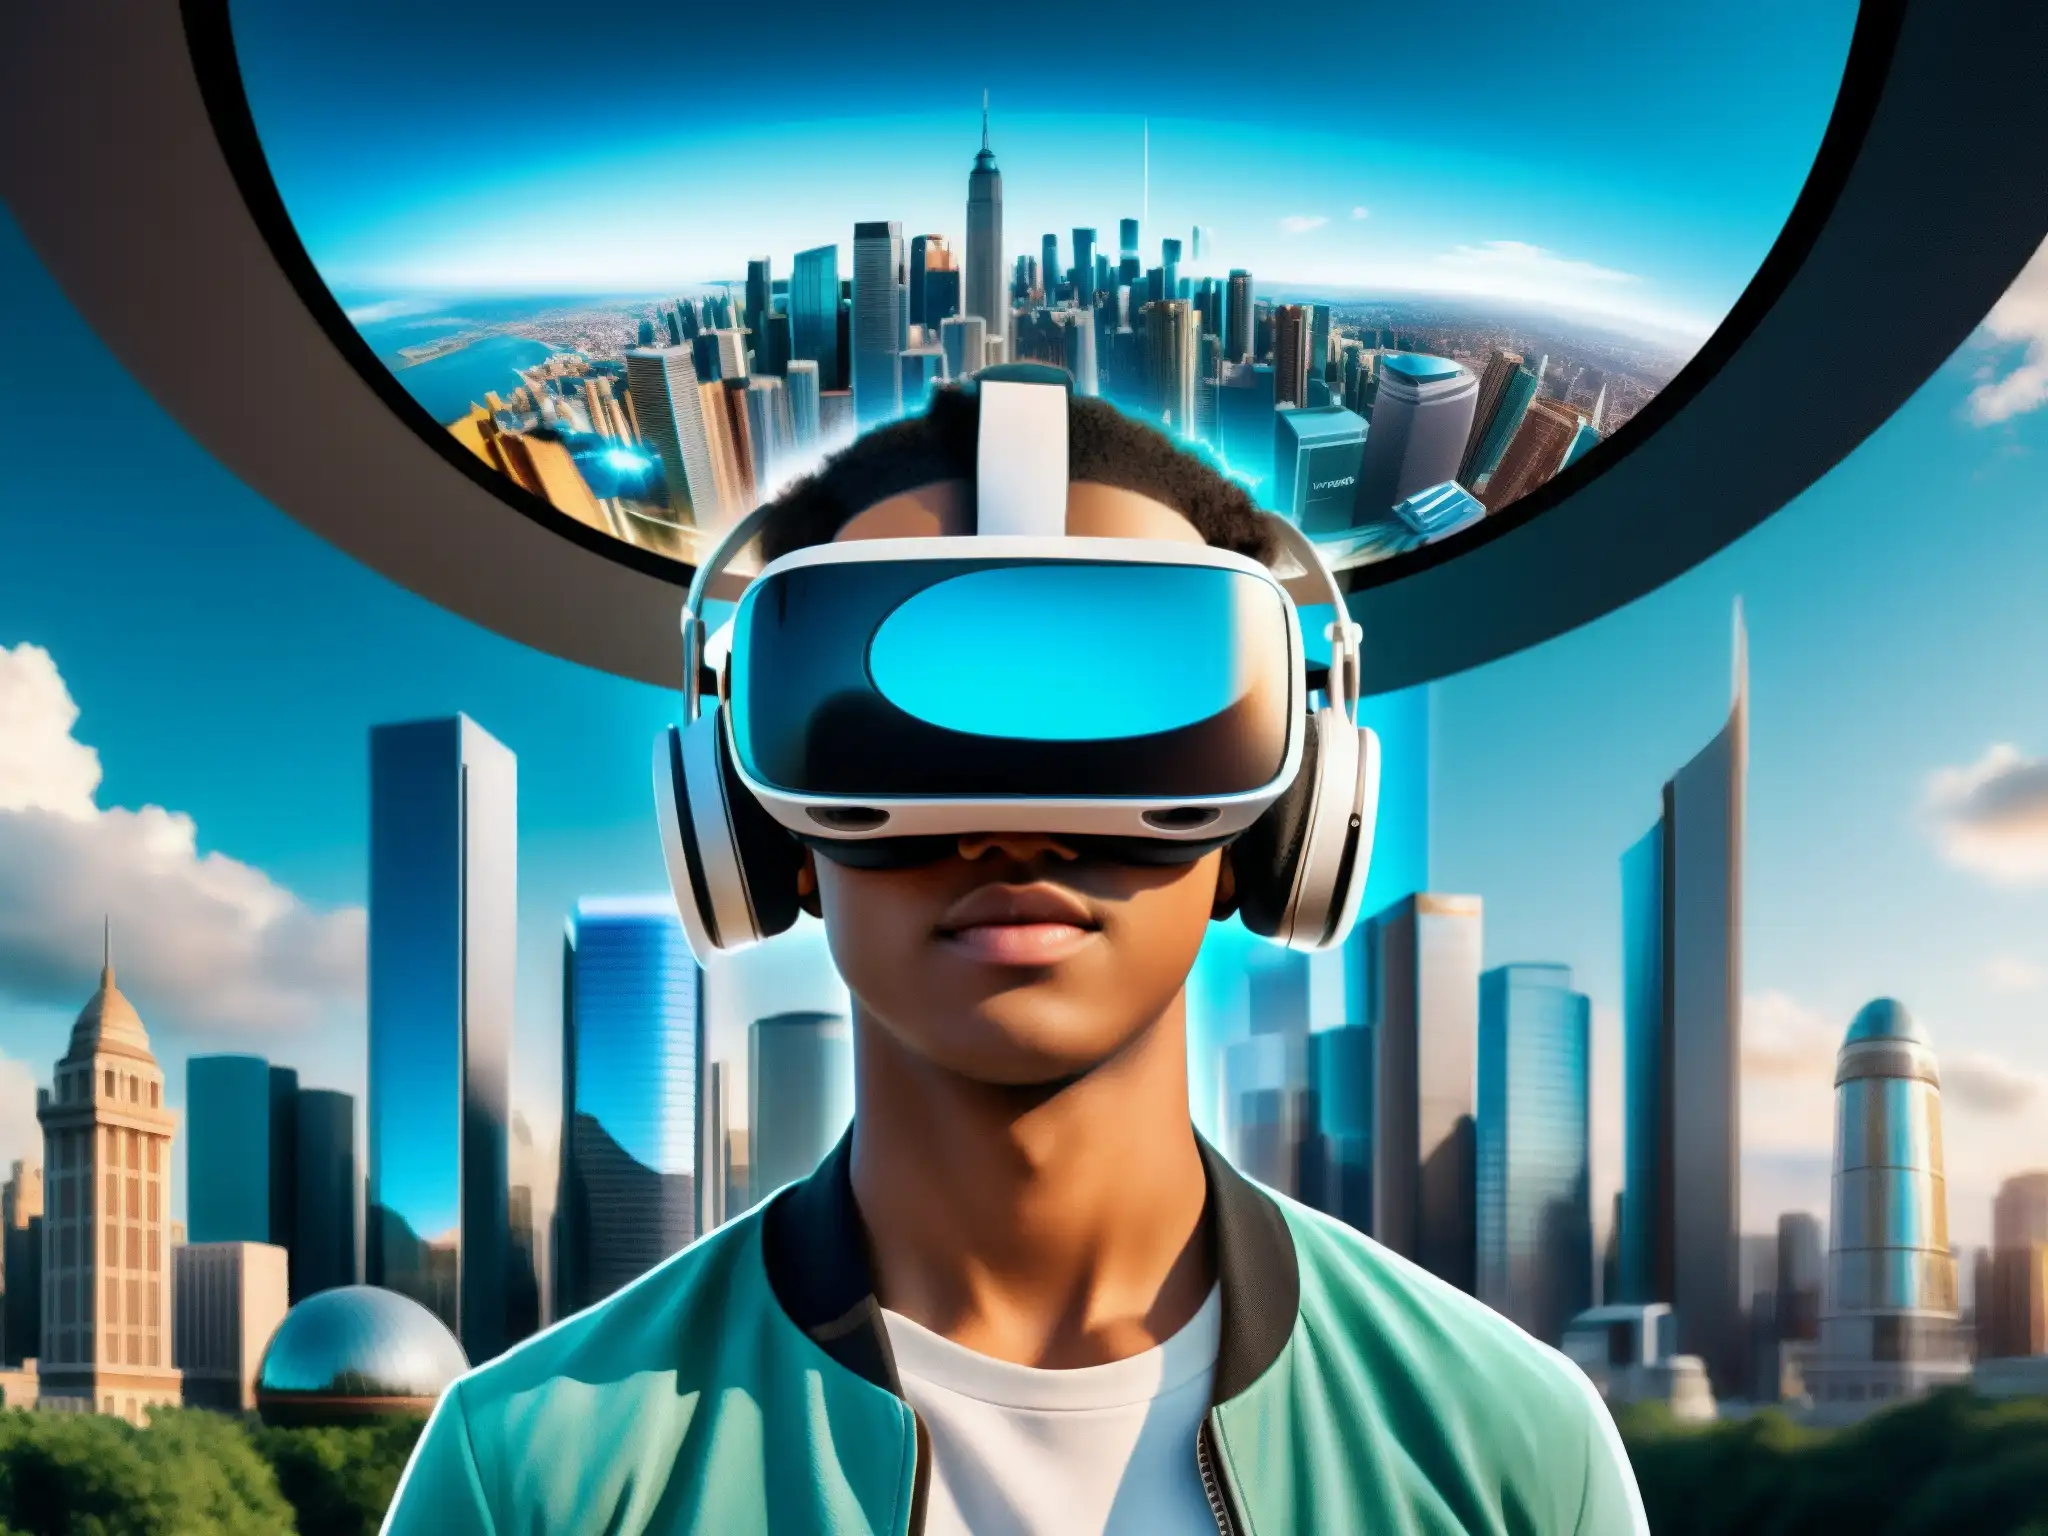 Persona asombrada en realidad virtual, interactuando con leyendas urbanas en futurista ciudad holográfica